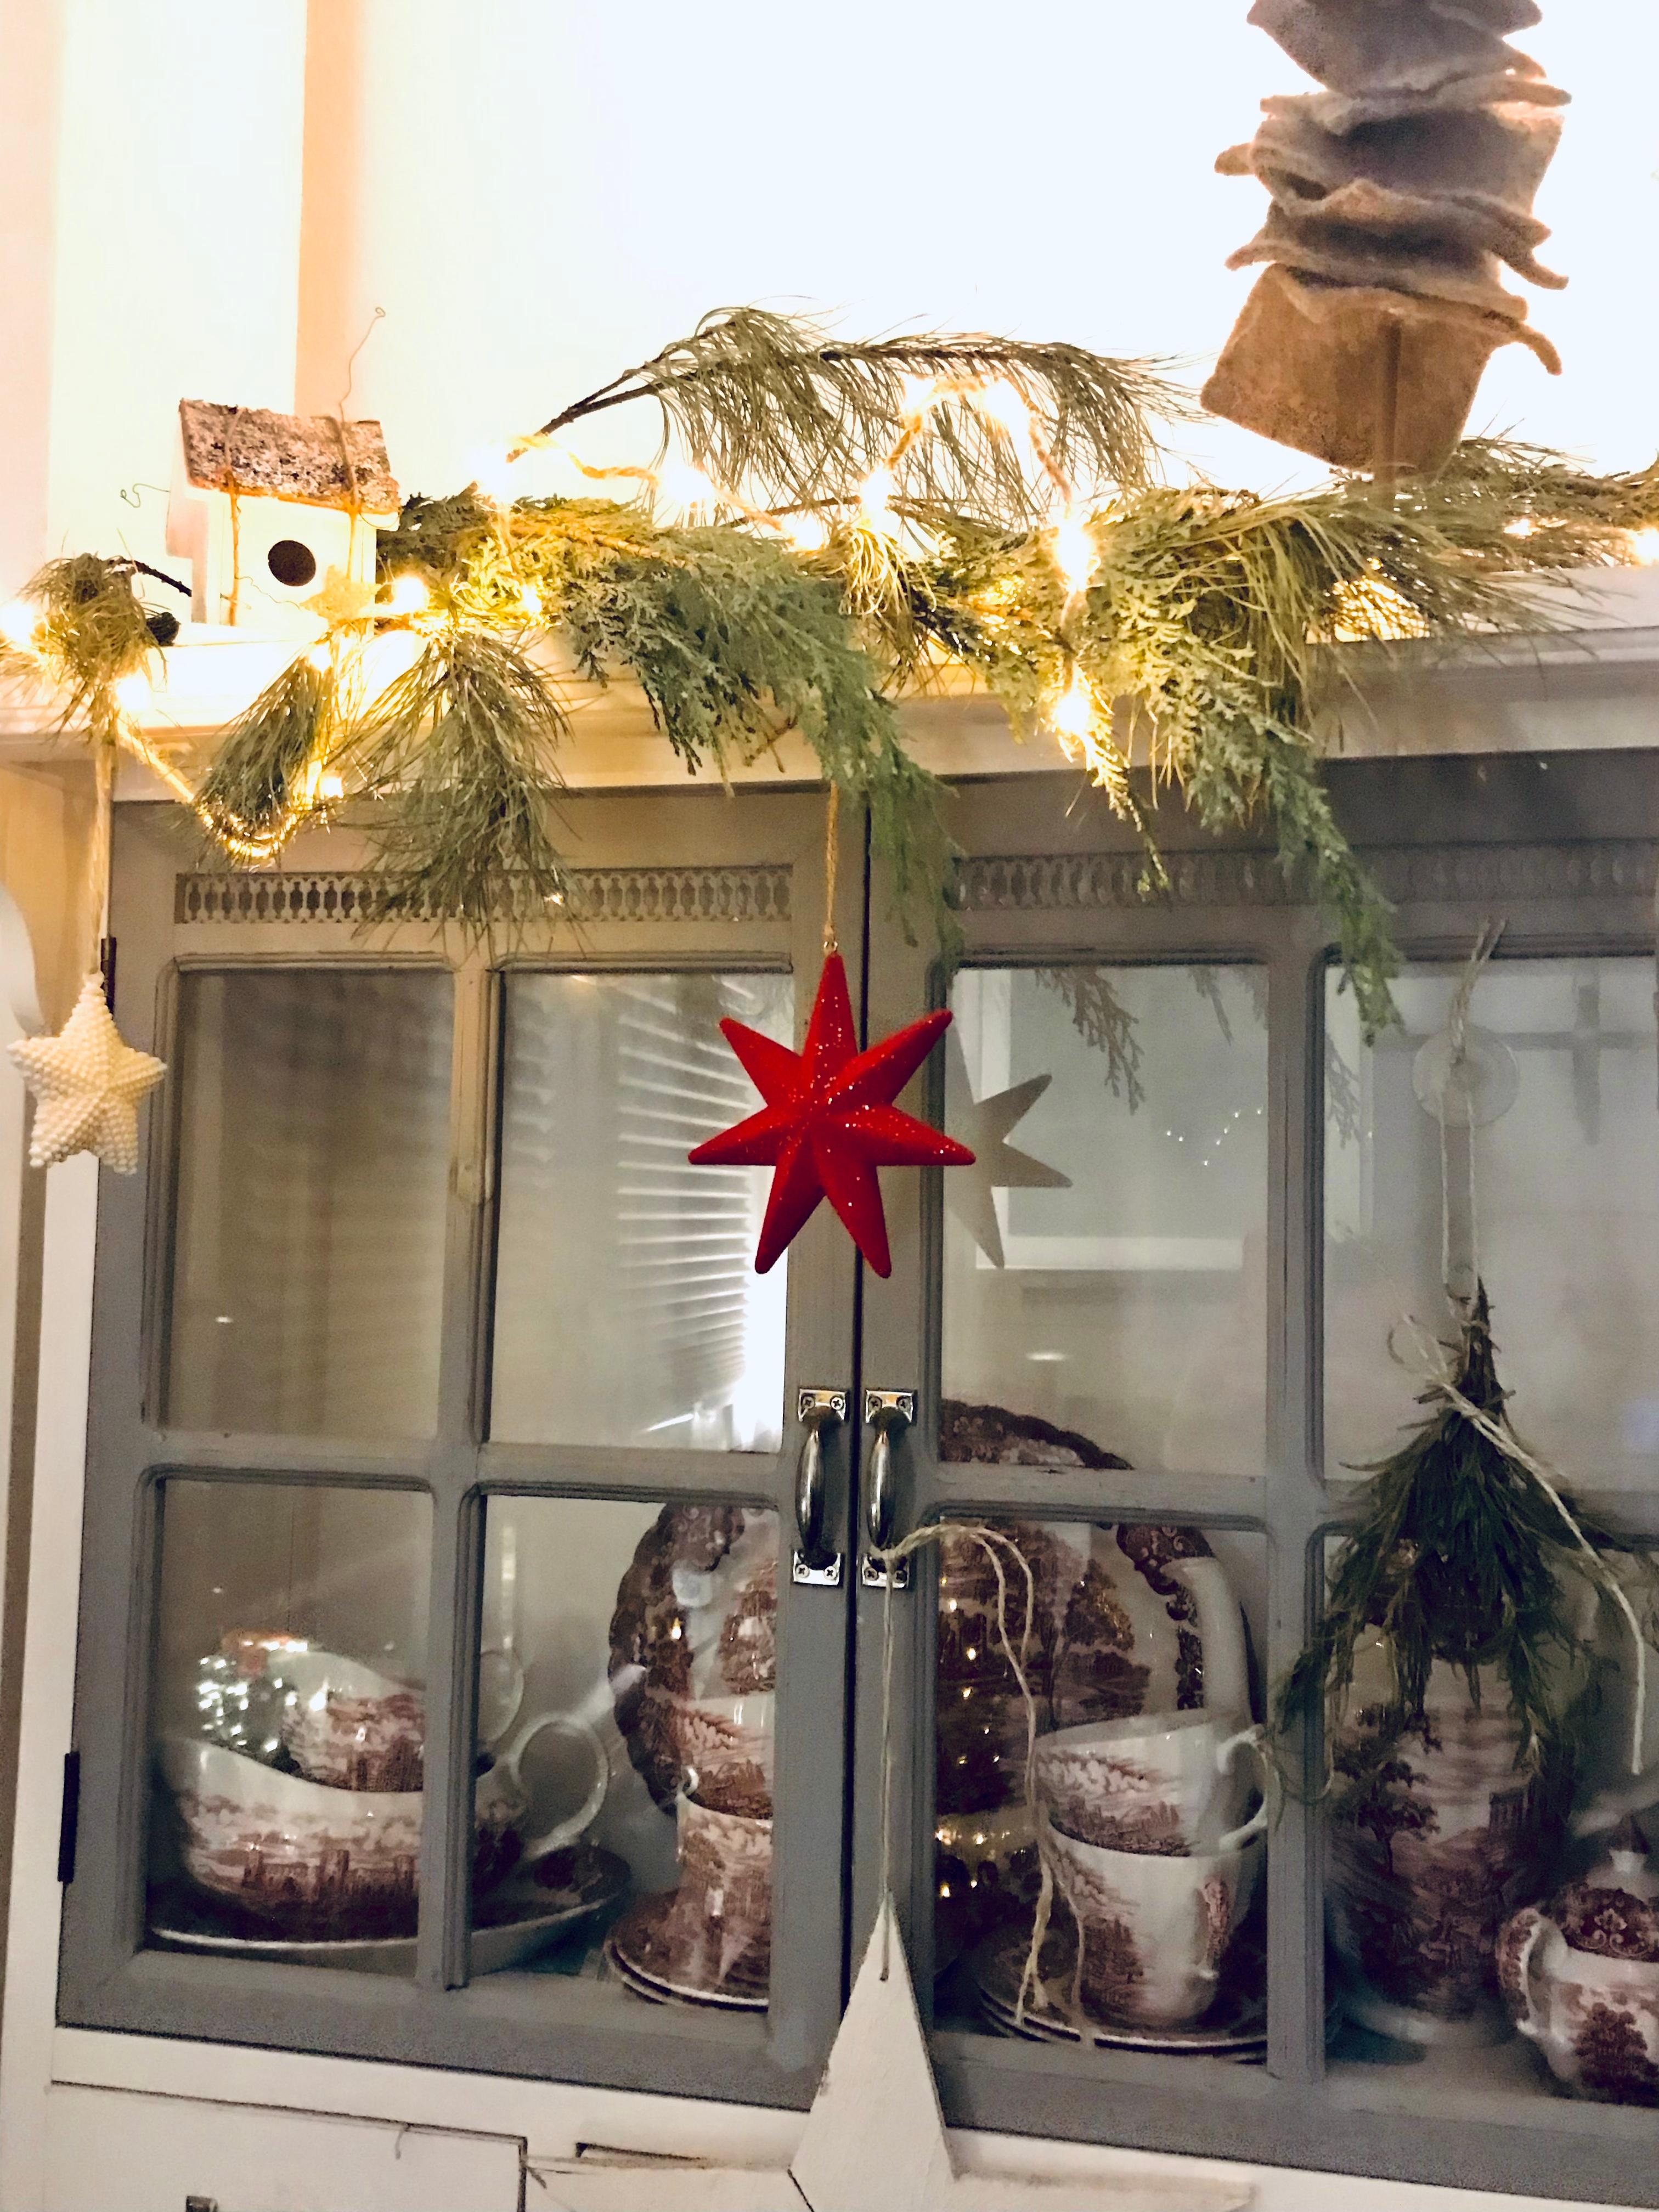 Weihnachtliche Küche 🕯
#hohoho #xmas #küche #jinglebells #advent #weihnachtlichestimmung 
#home #cozy 